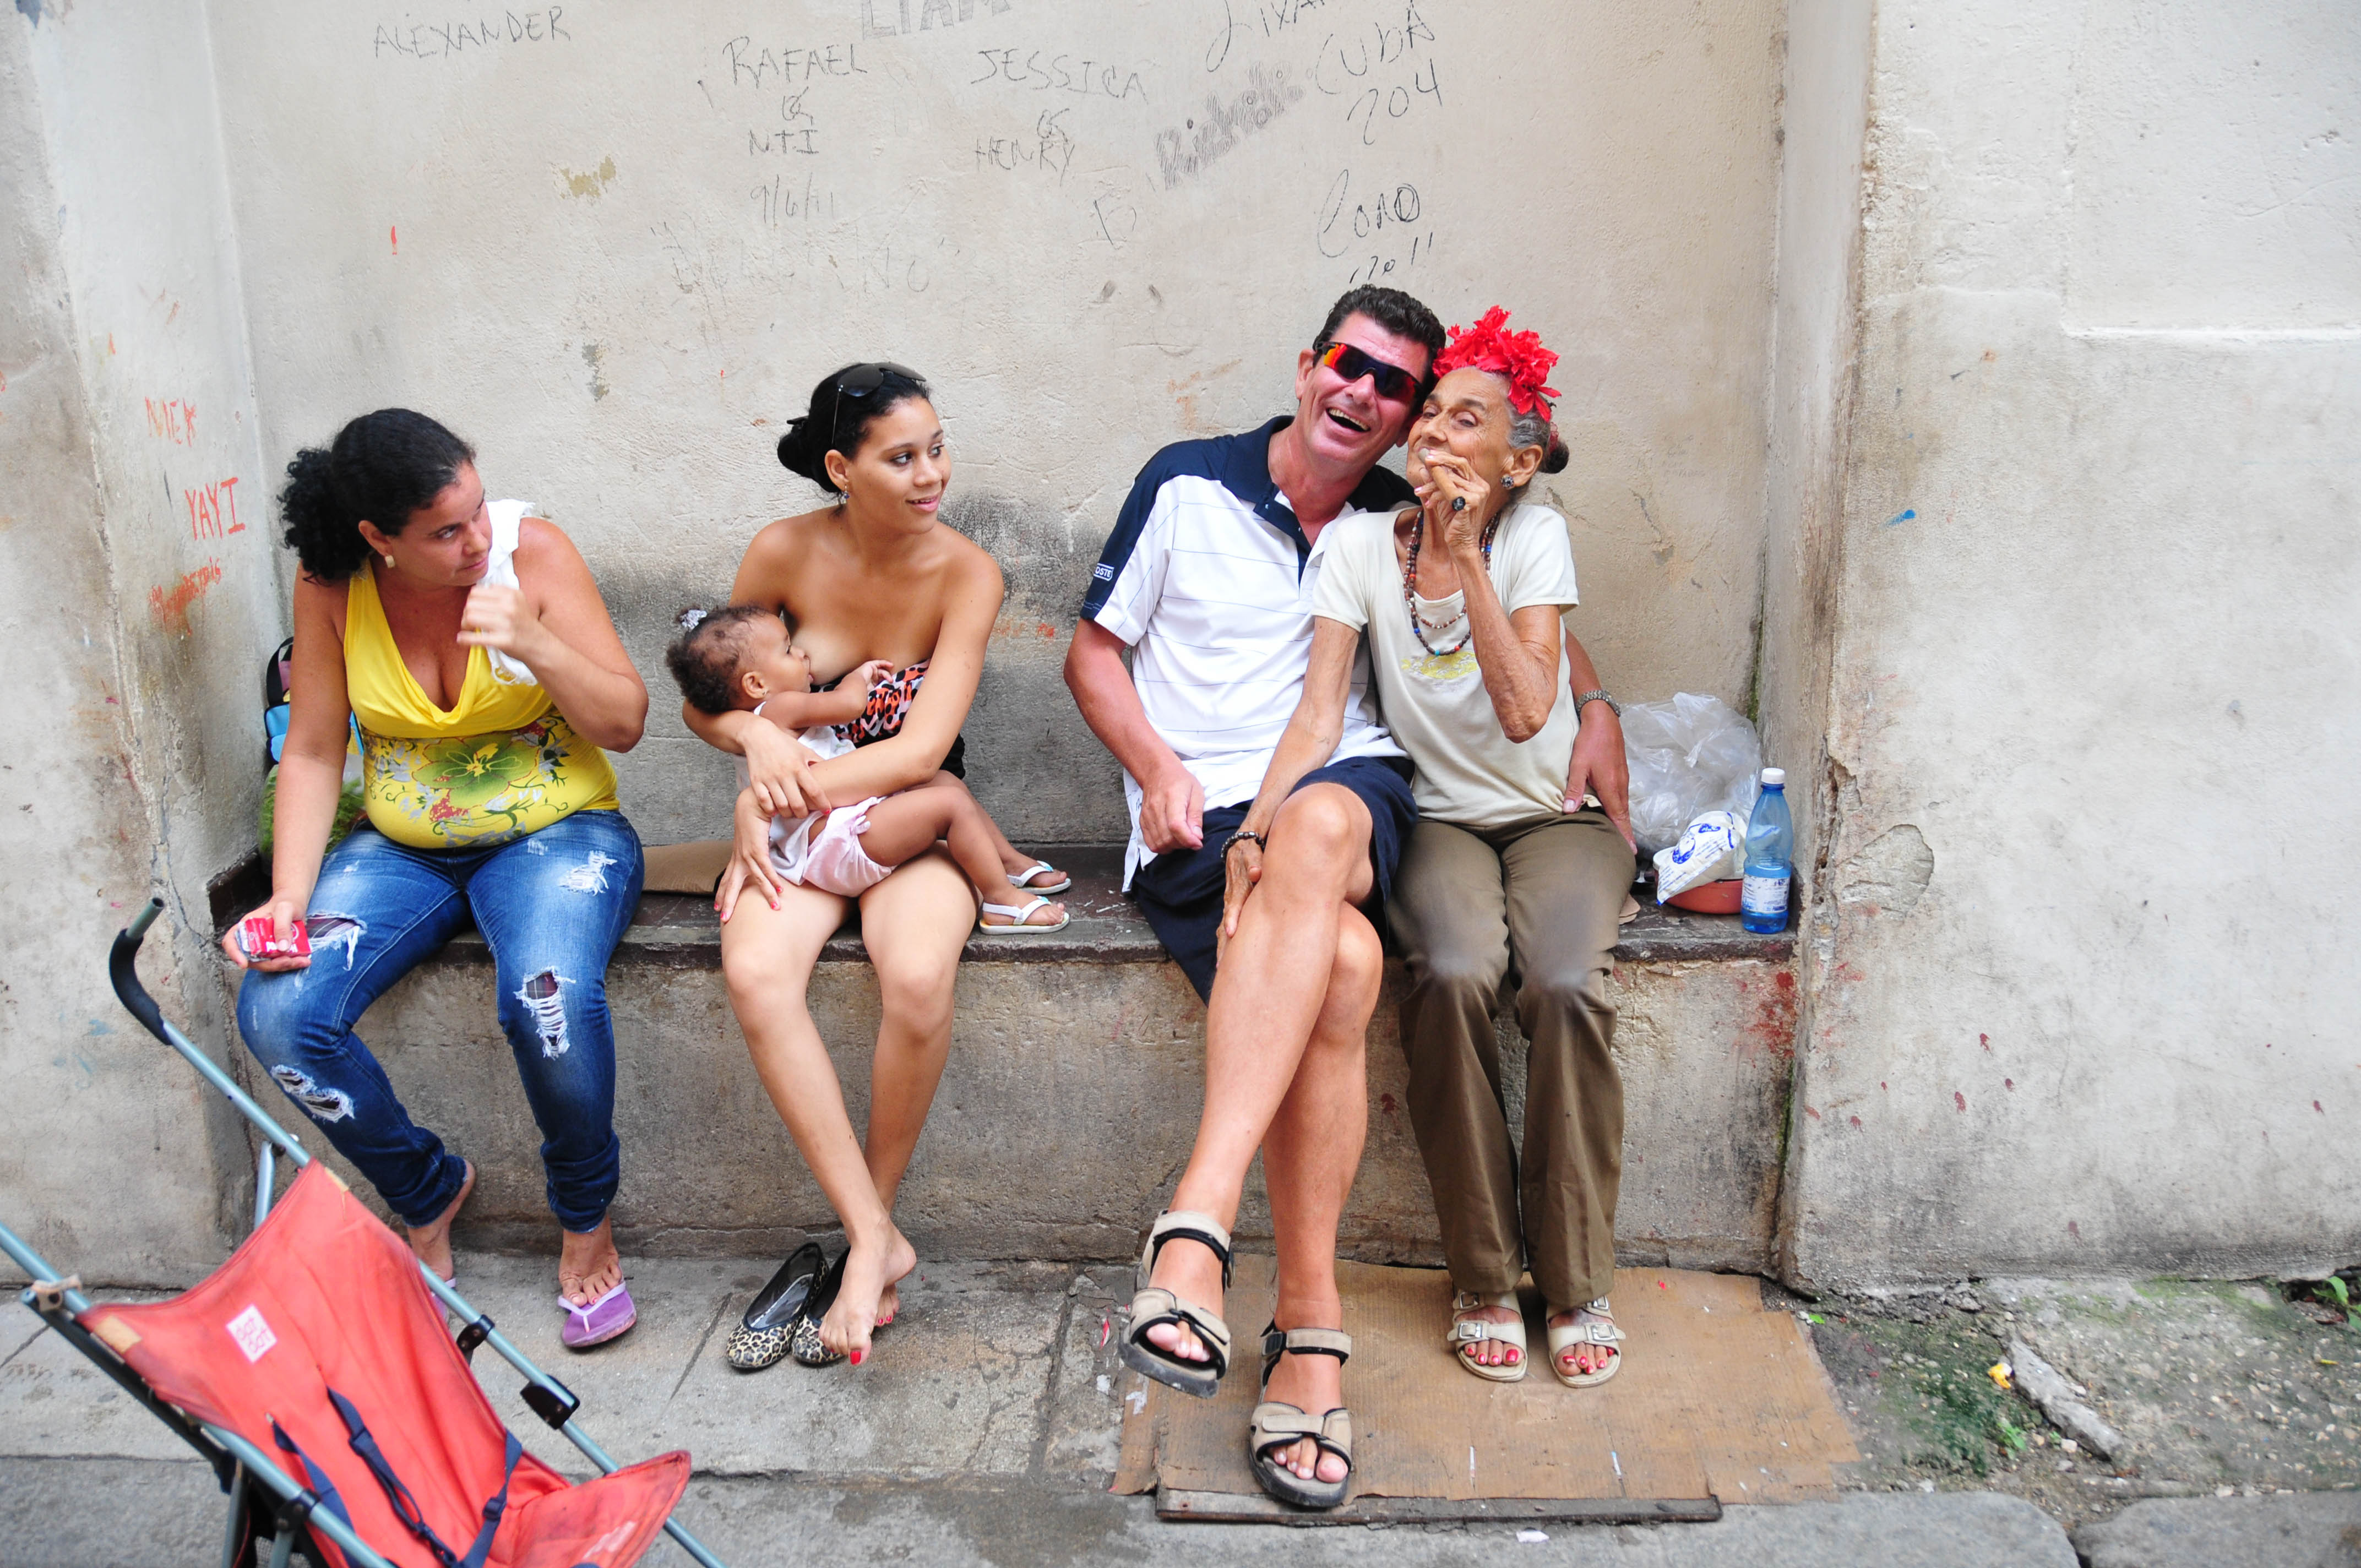 Detta fotot togs precis utanför Hemingways favoritbar i Havanna, Flodita. (Tjejen till höger såg jag inte förrän jag framkallade fotot!)